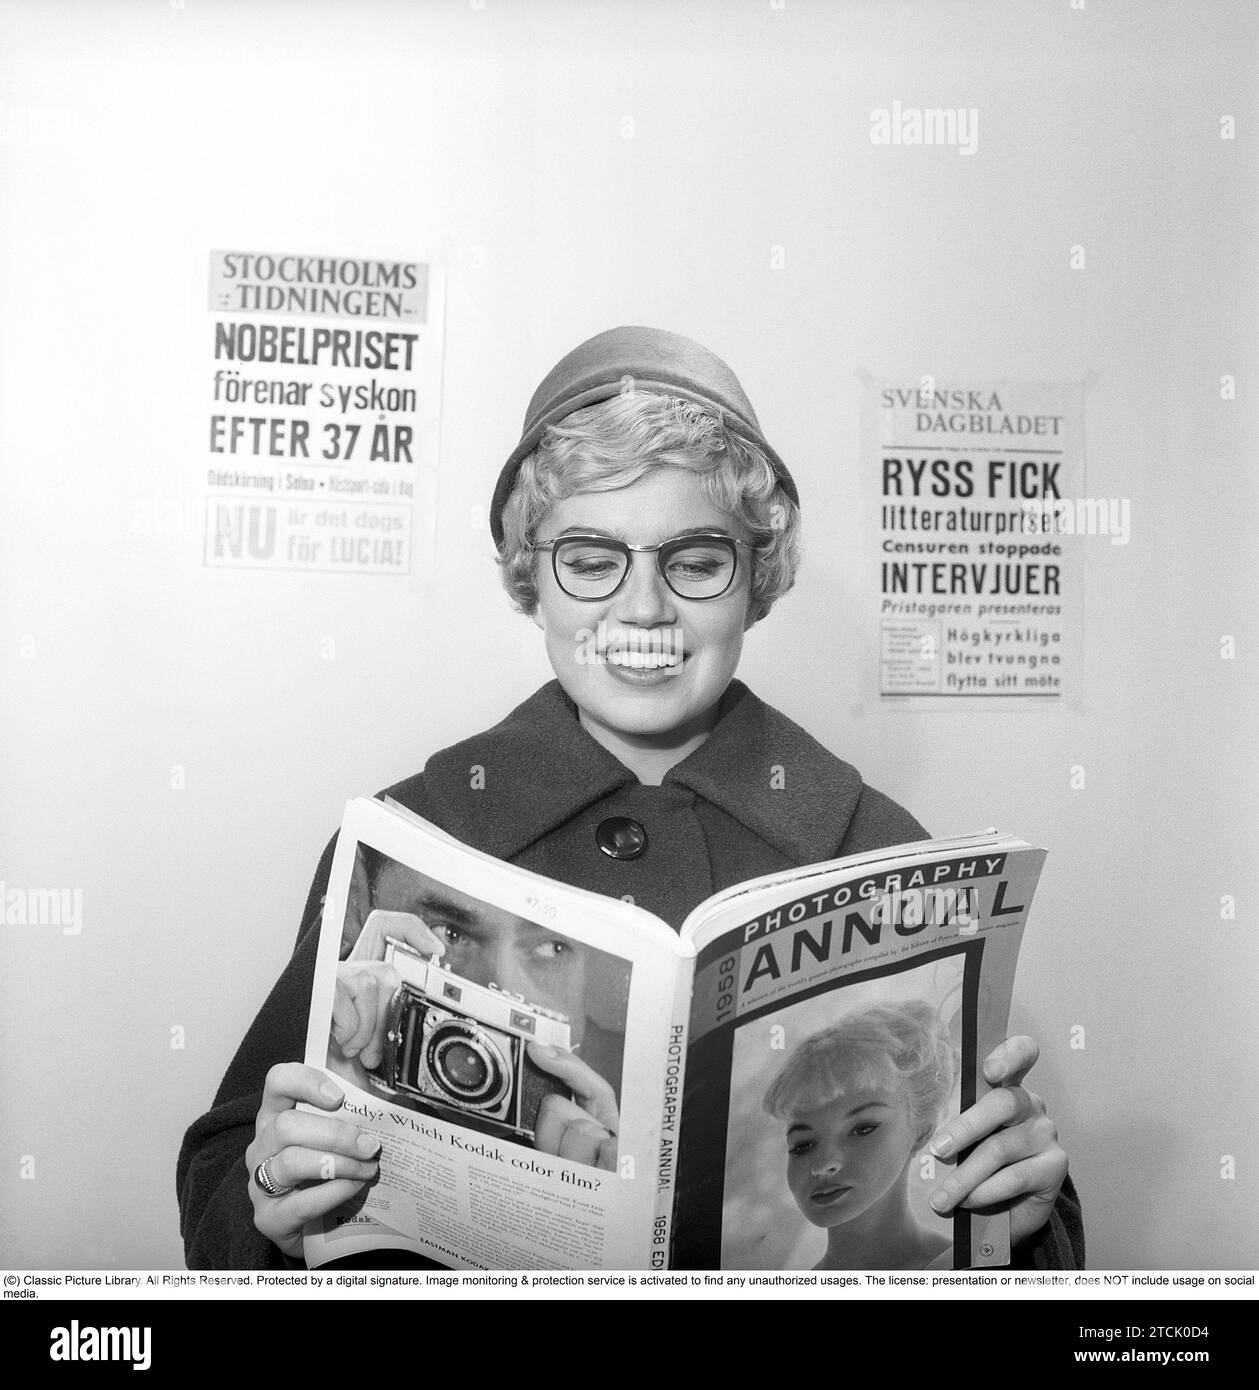 In den 1950er Jahren A Woman liest aus der Ausgabe 1958 von Photography Year, einer jährlichen Zusammenstellung einer Auswahl der besten Fotografien der Welt, die von den Herausgebern der Zeitschrift Popular Photography erstellt wurde. Schweden 1958. Kristoffersson Ref. CB95-11 Stockfoto